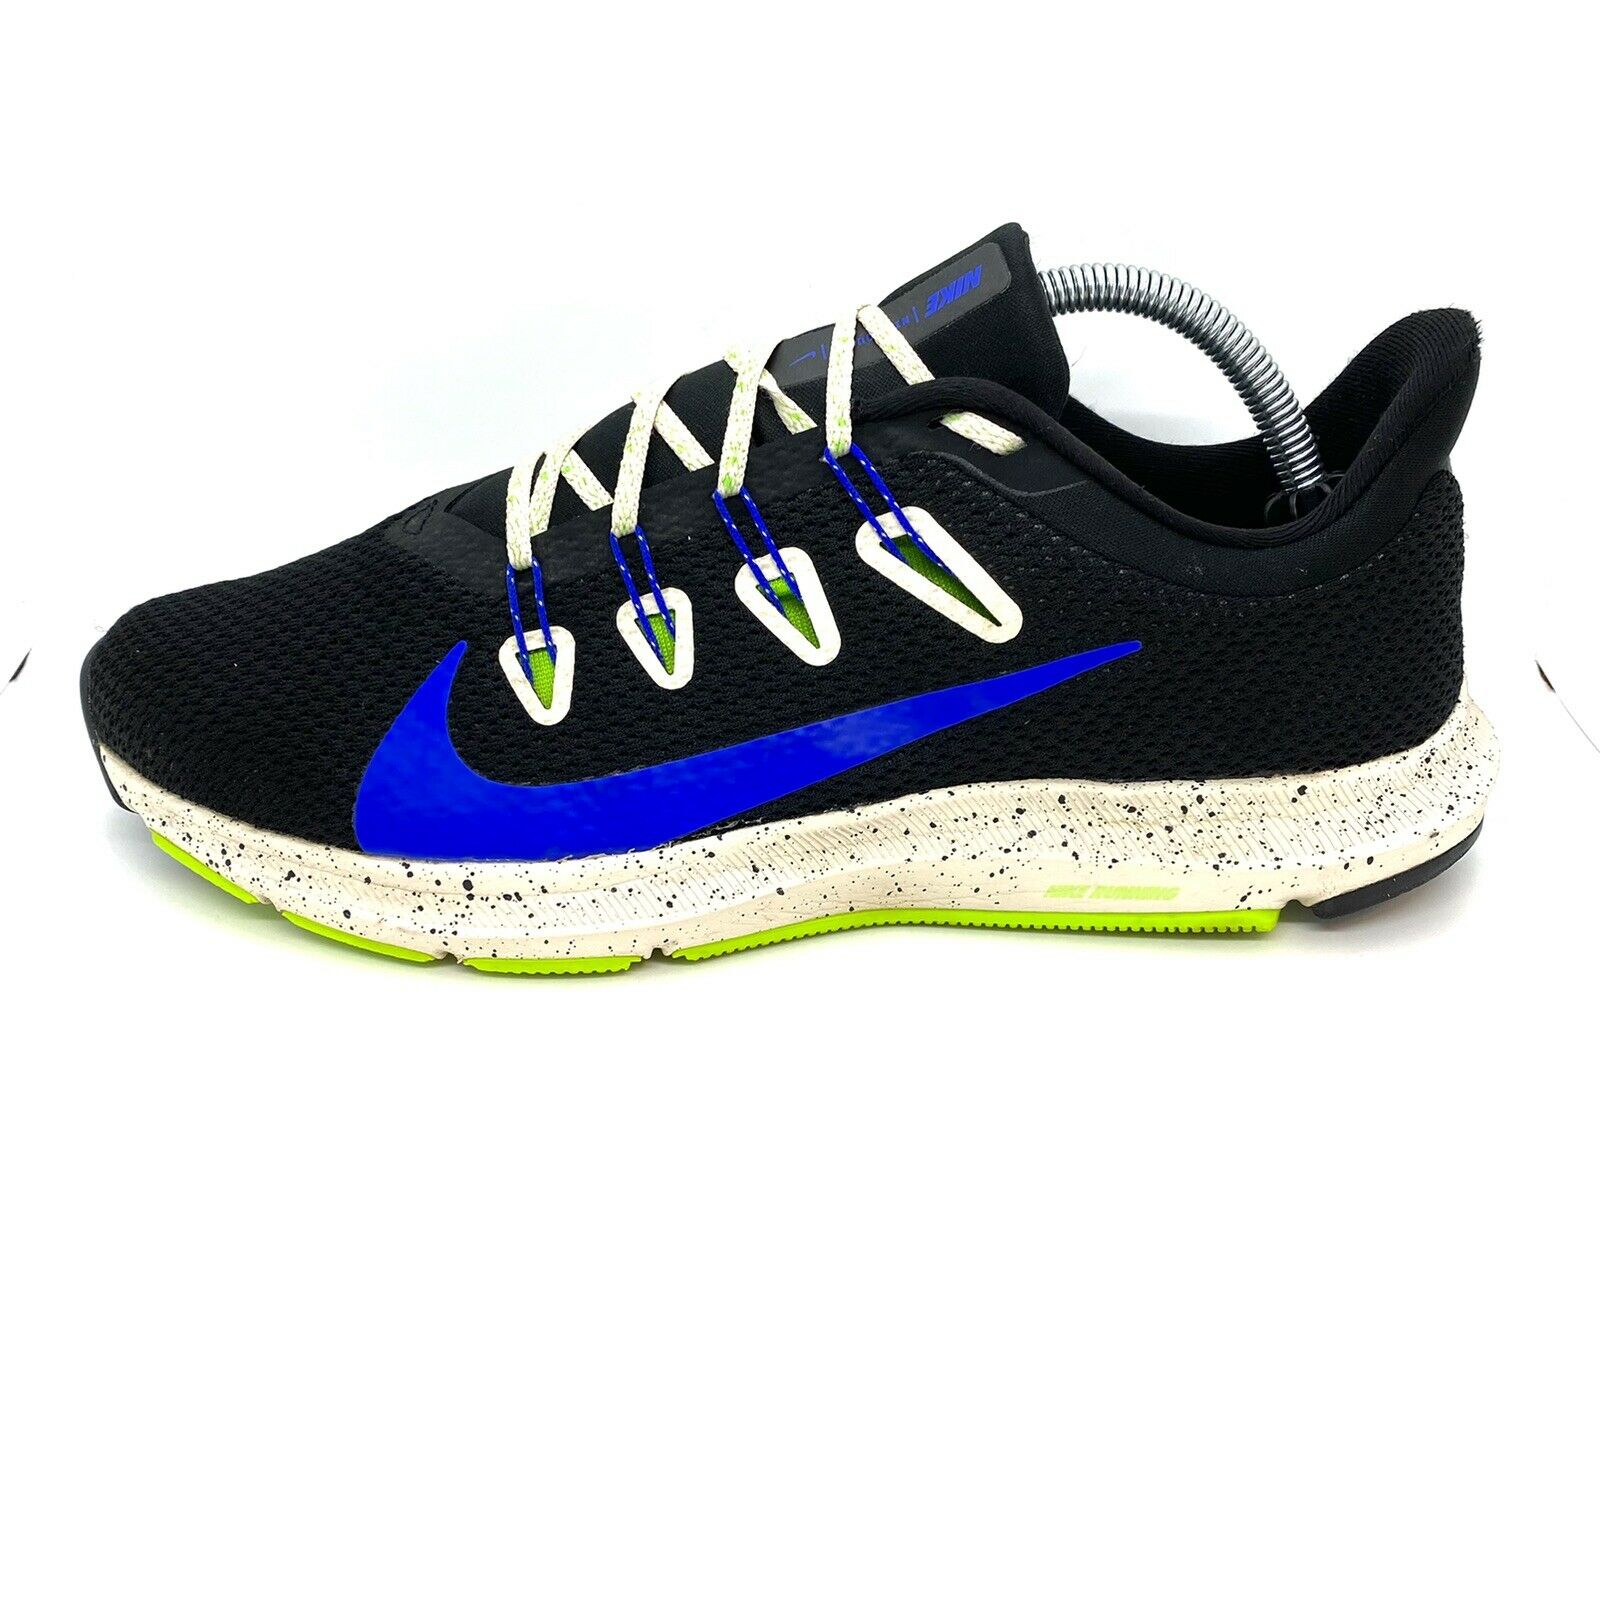 Men's Nike Quest 2 SE Running Shoes Black / Blue / Desert Sand Sz 9.5 CJ6185 001